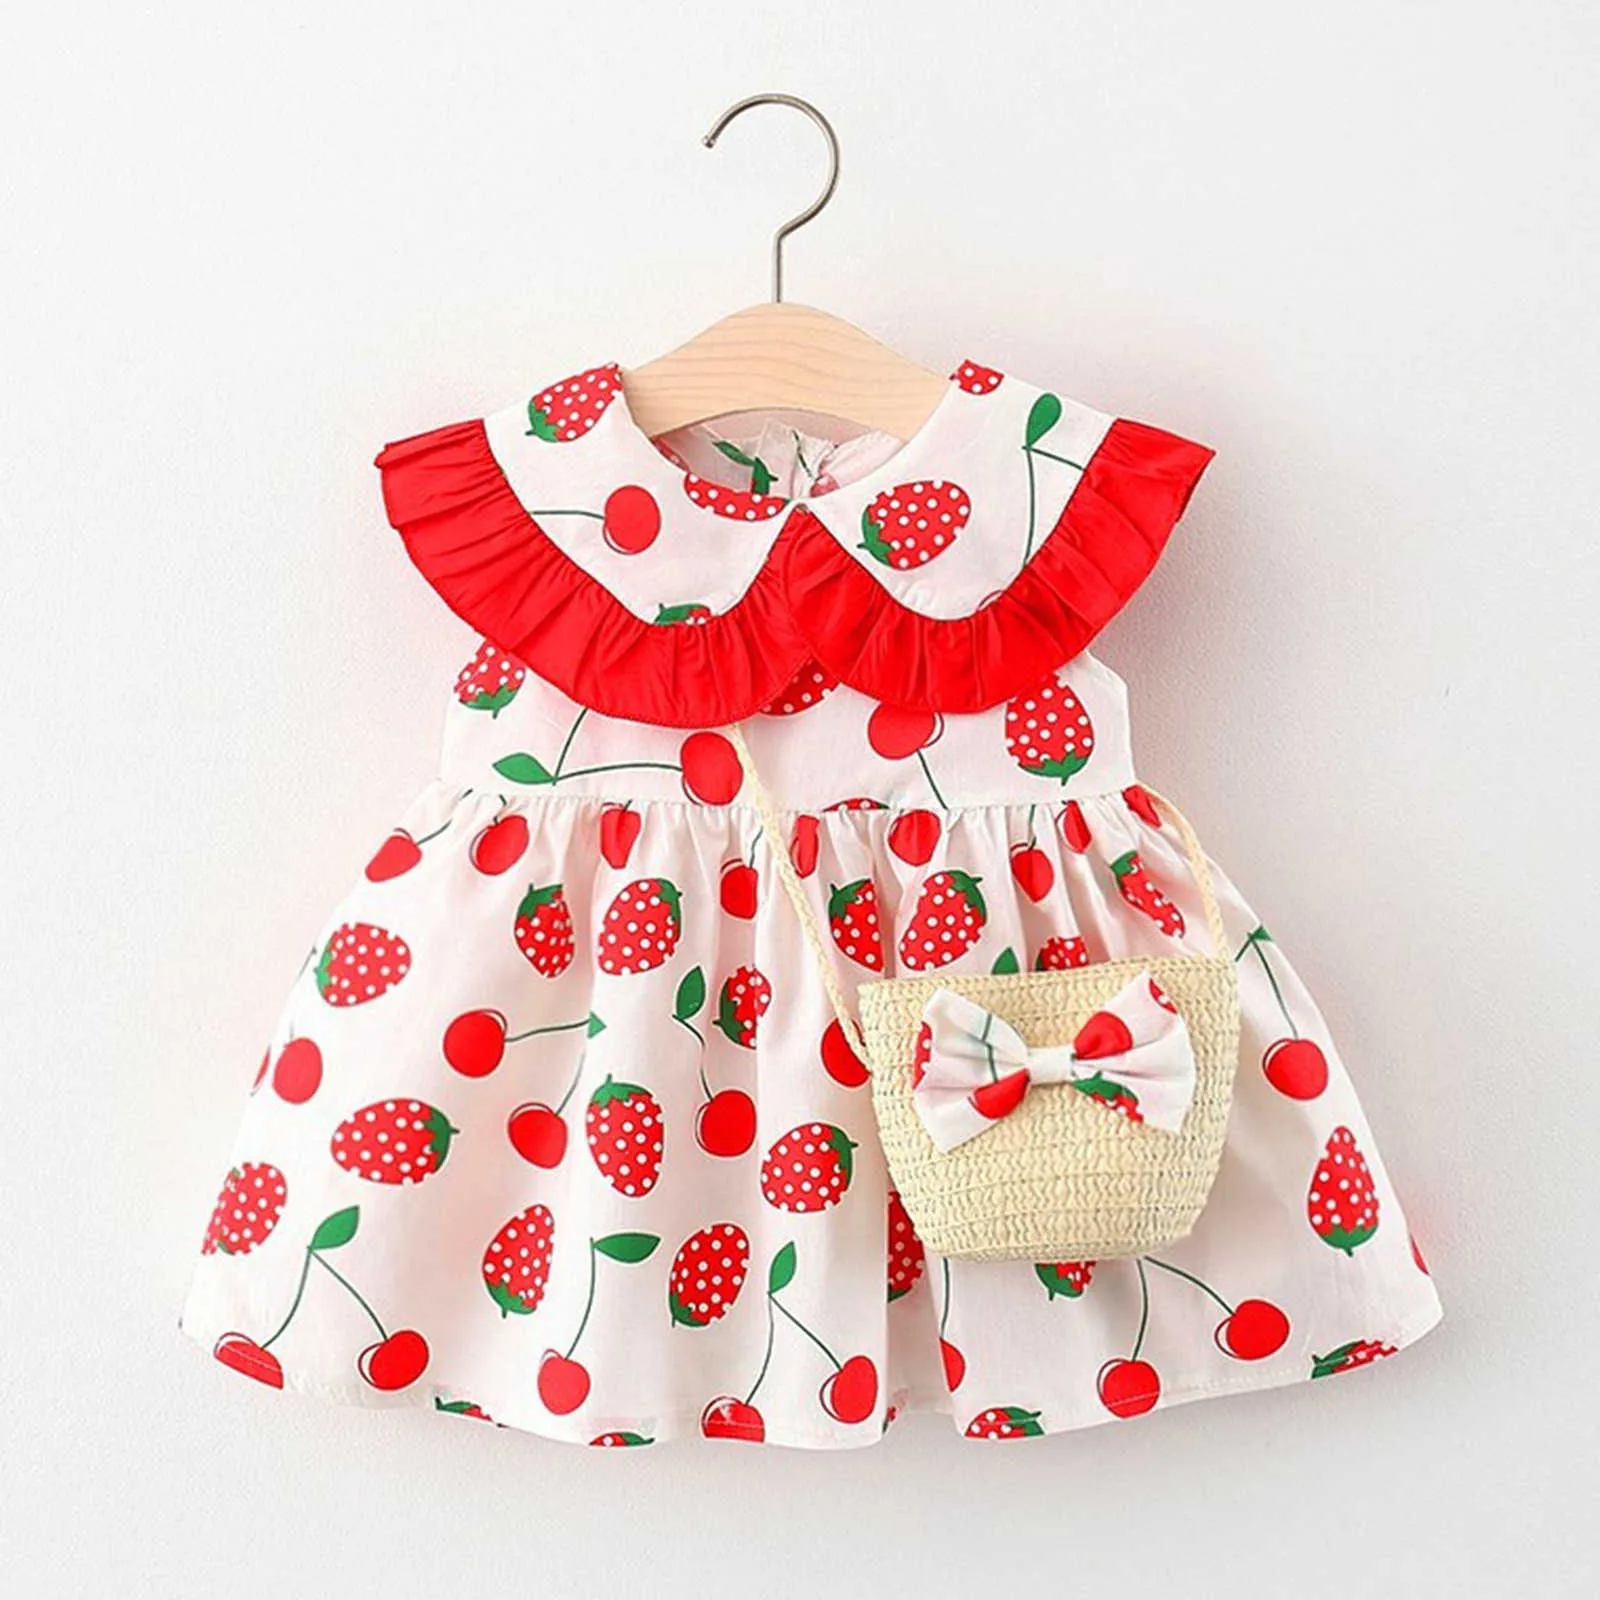 Baby Mädchen Peter Pan Kragen Erdbeere Sommer Prinzessin Kleider Kleinkind Kinder Mädchen Outfit Sommer Kleider Q0716